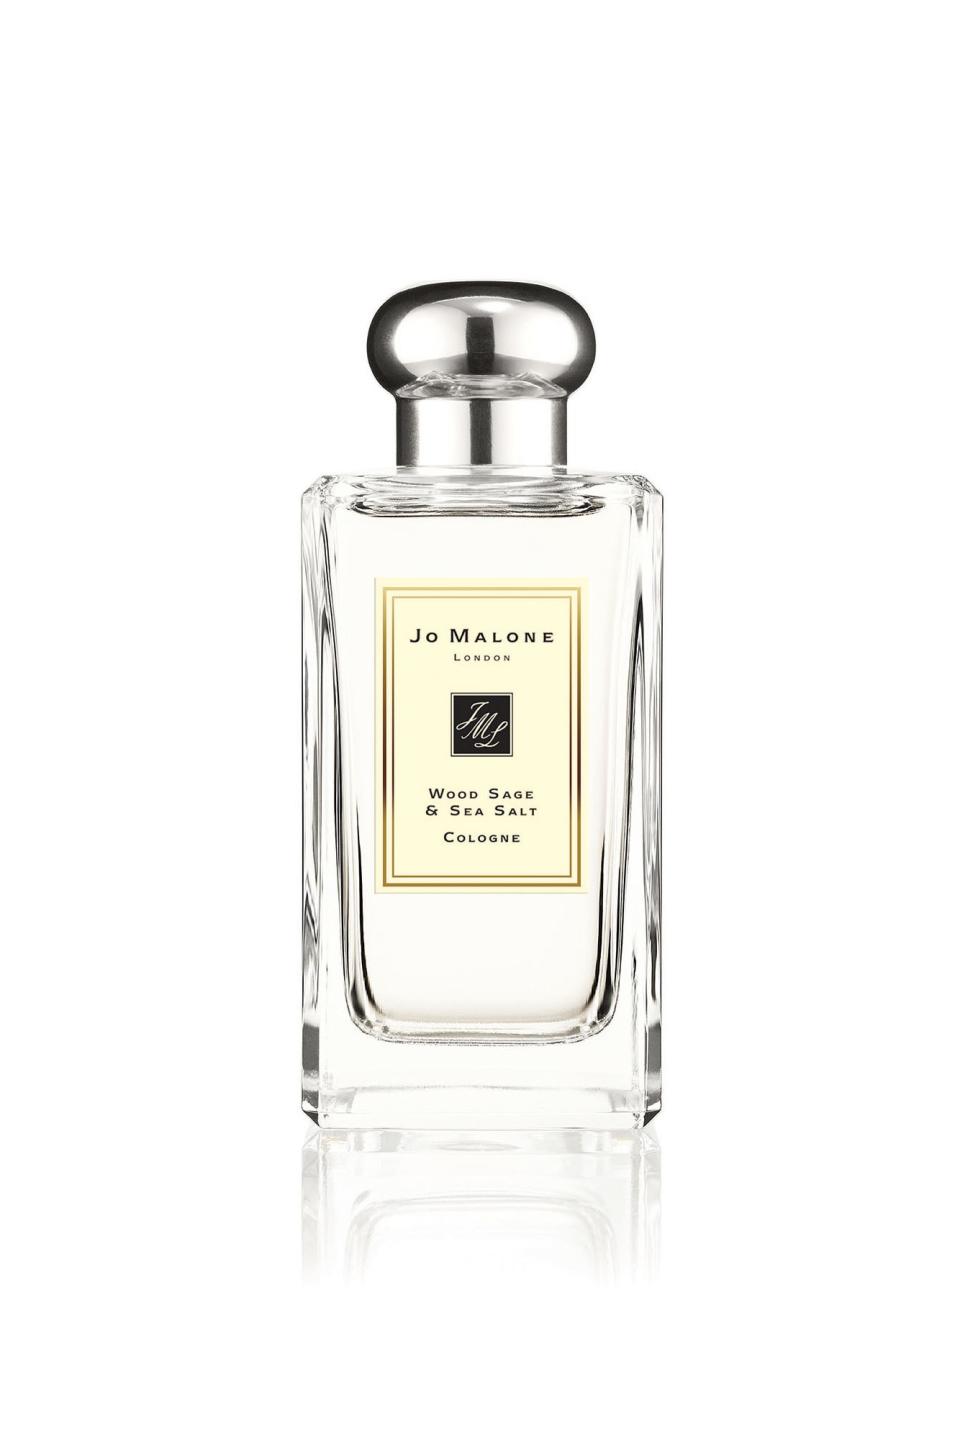 Jo Malone perfume, $136